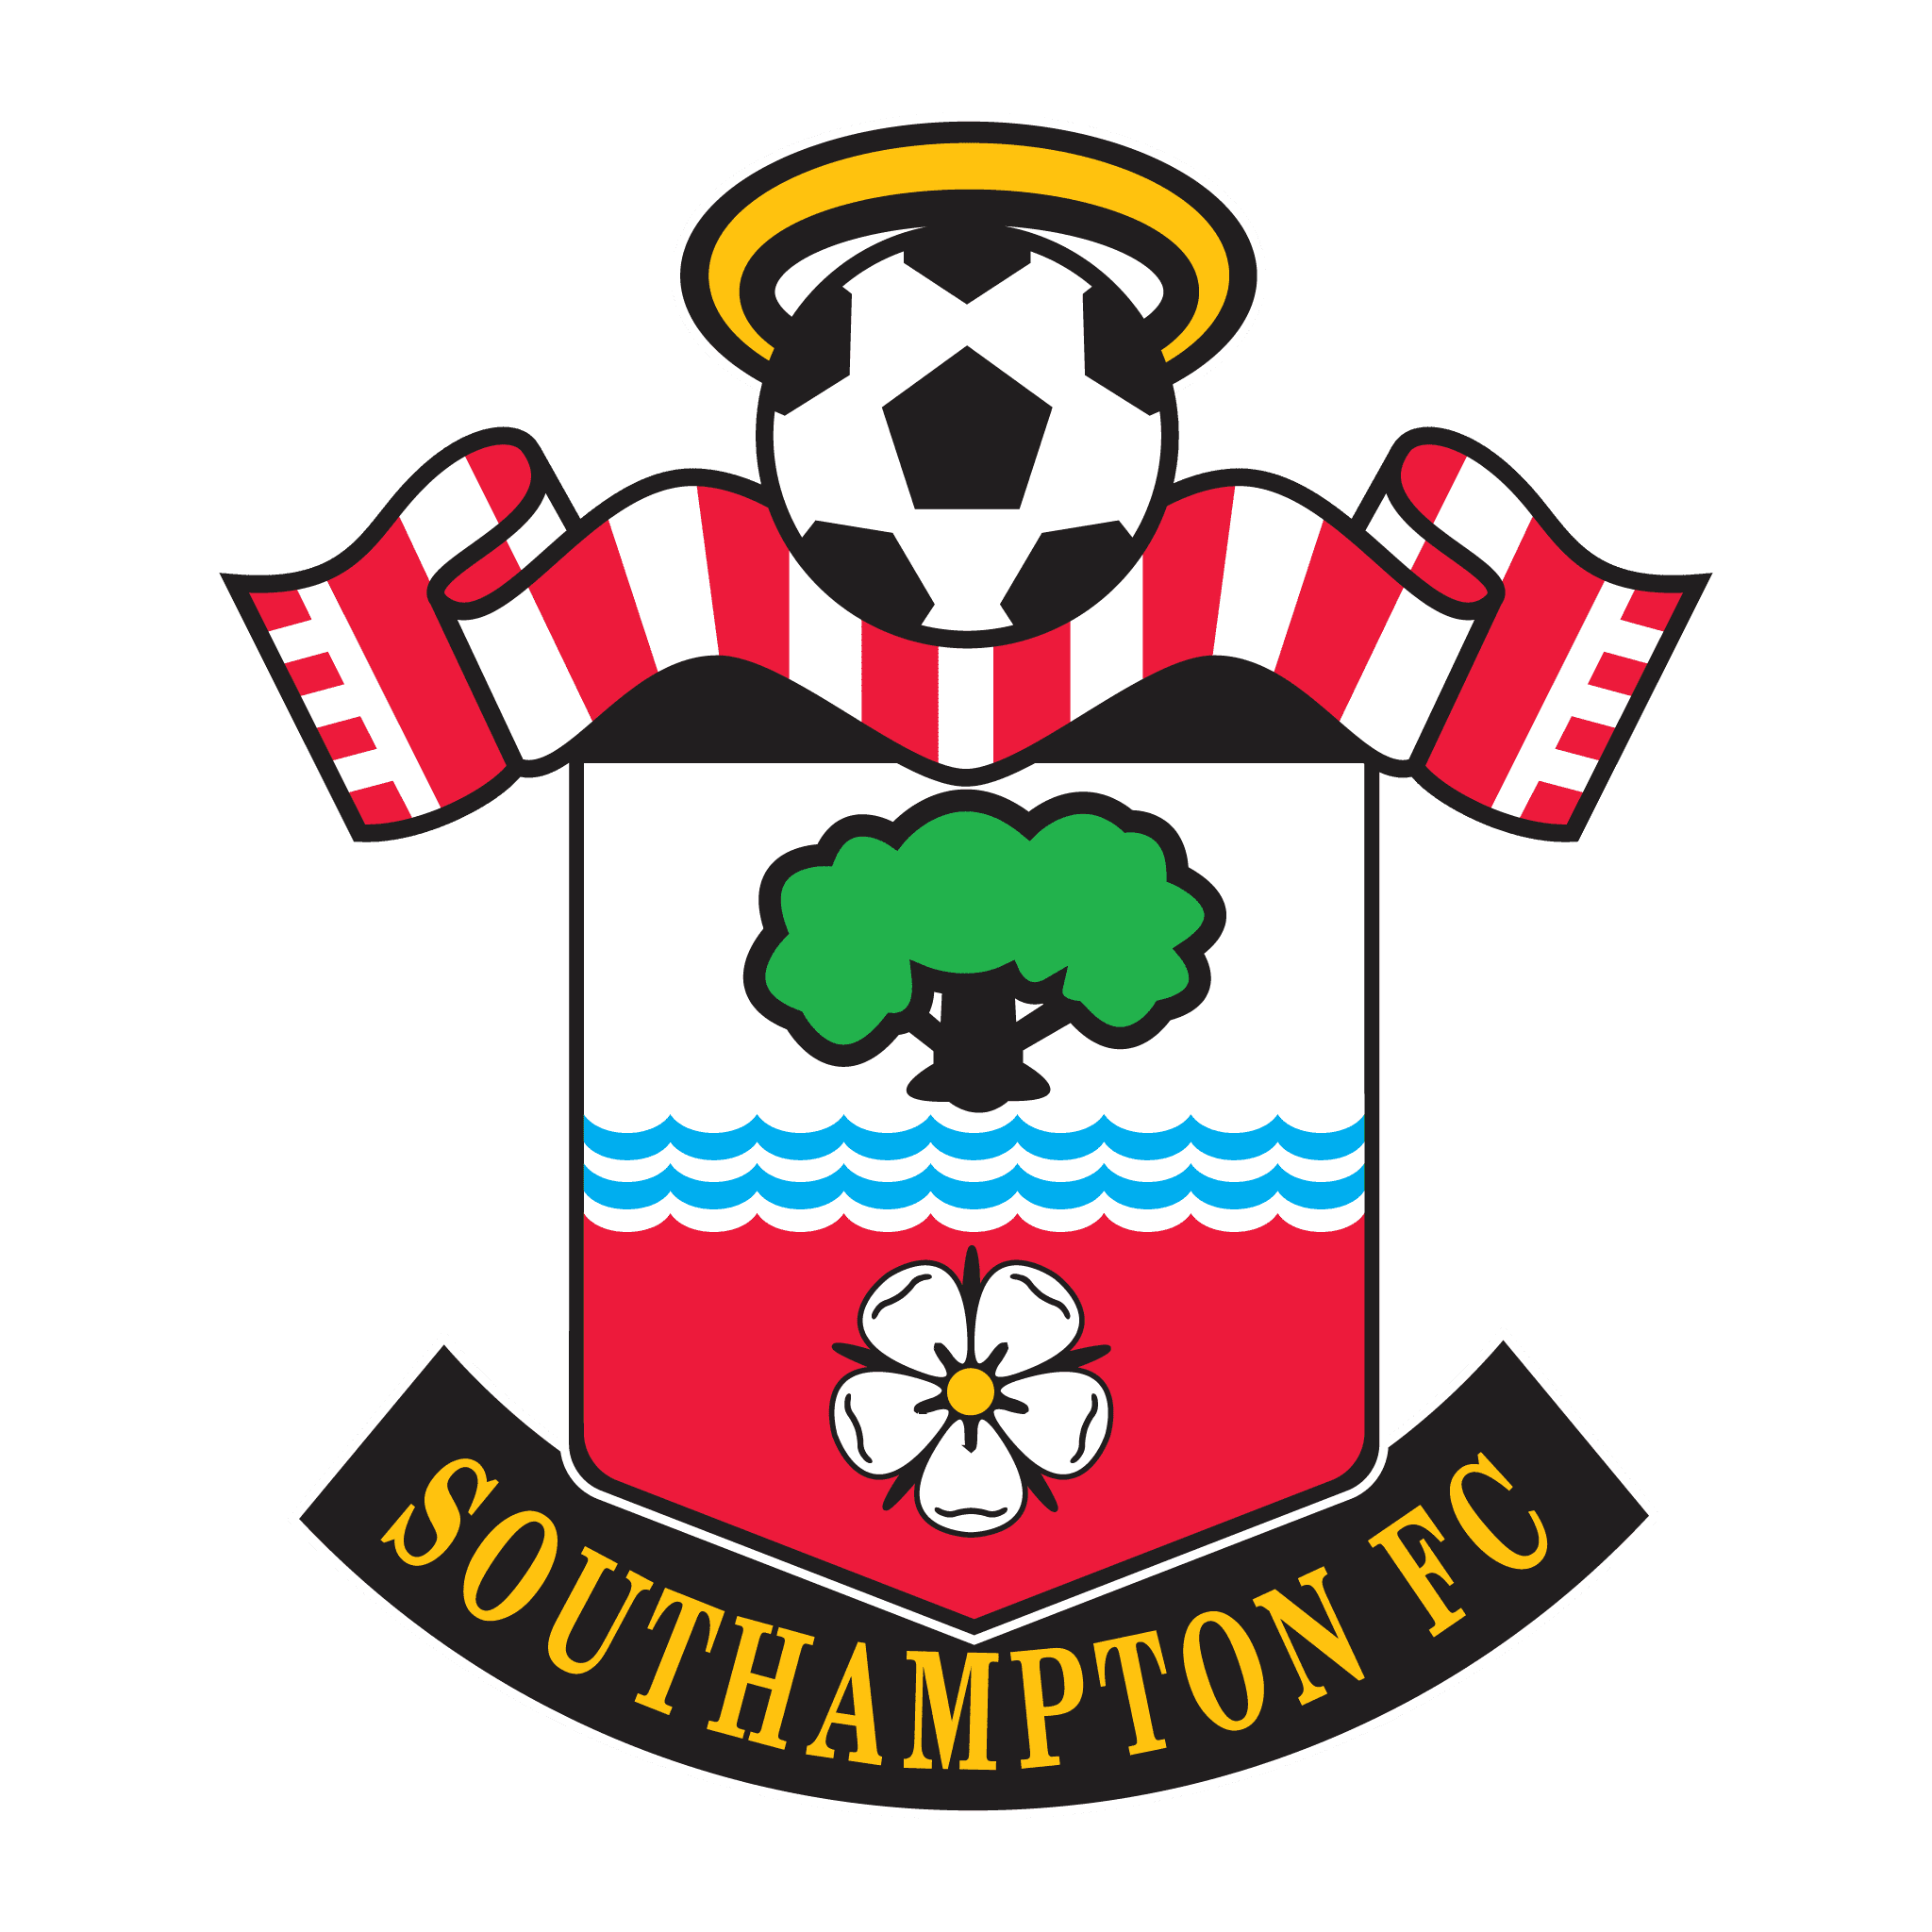 Logo câu lạc bộ bóng đá Southampton